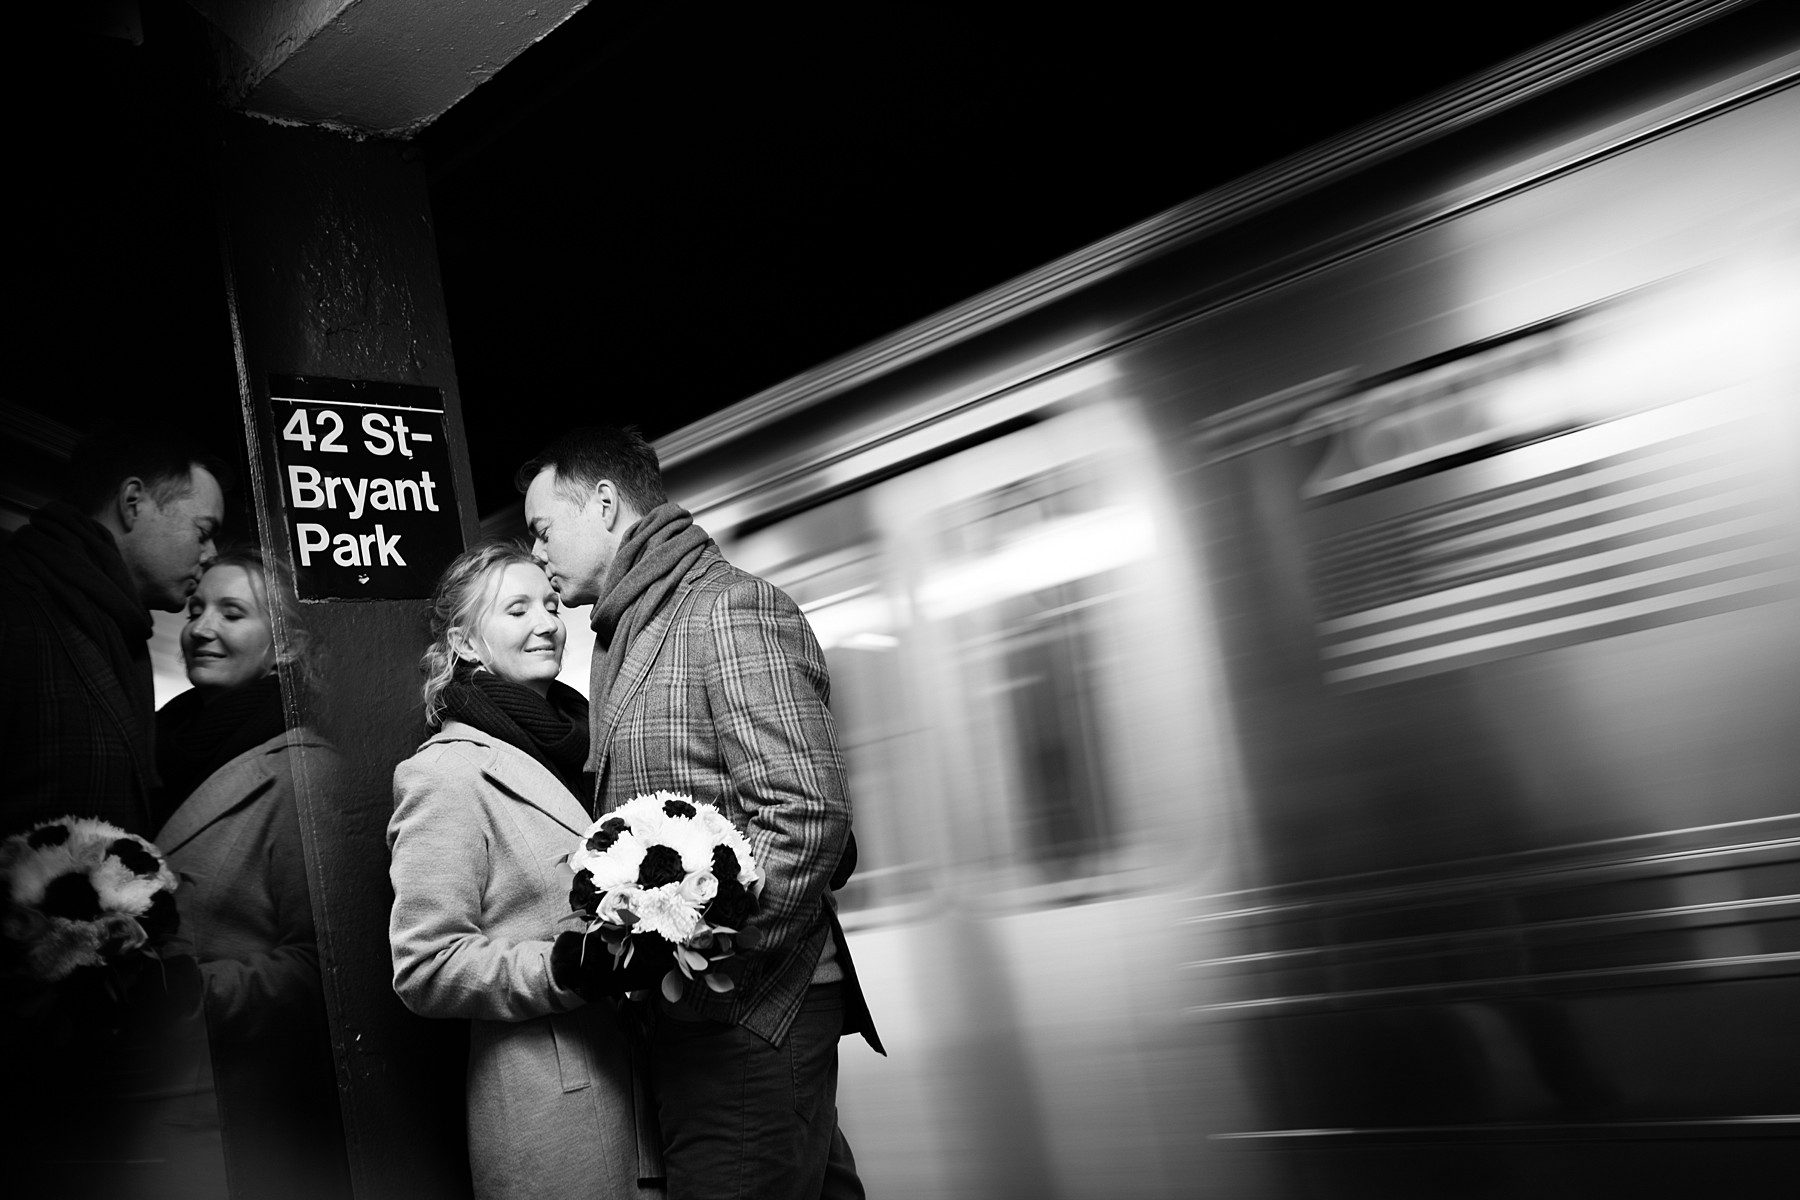 NYC Subway wedding